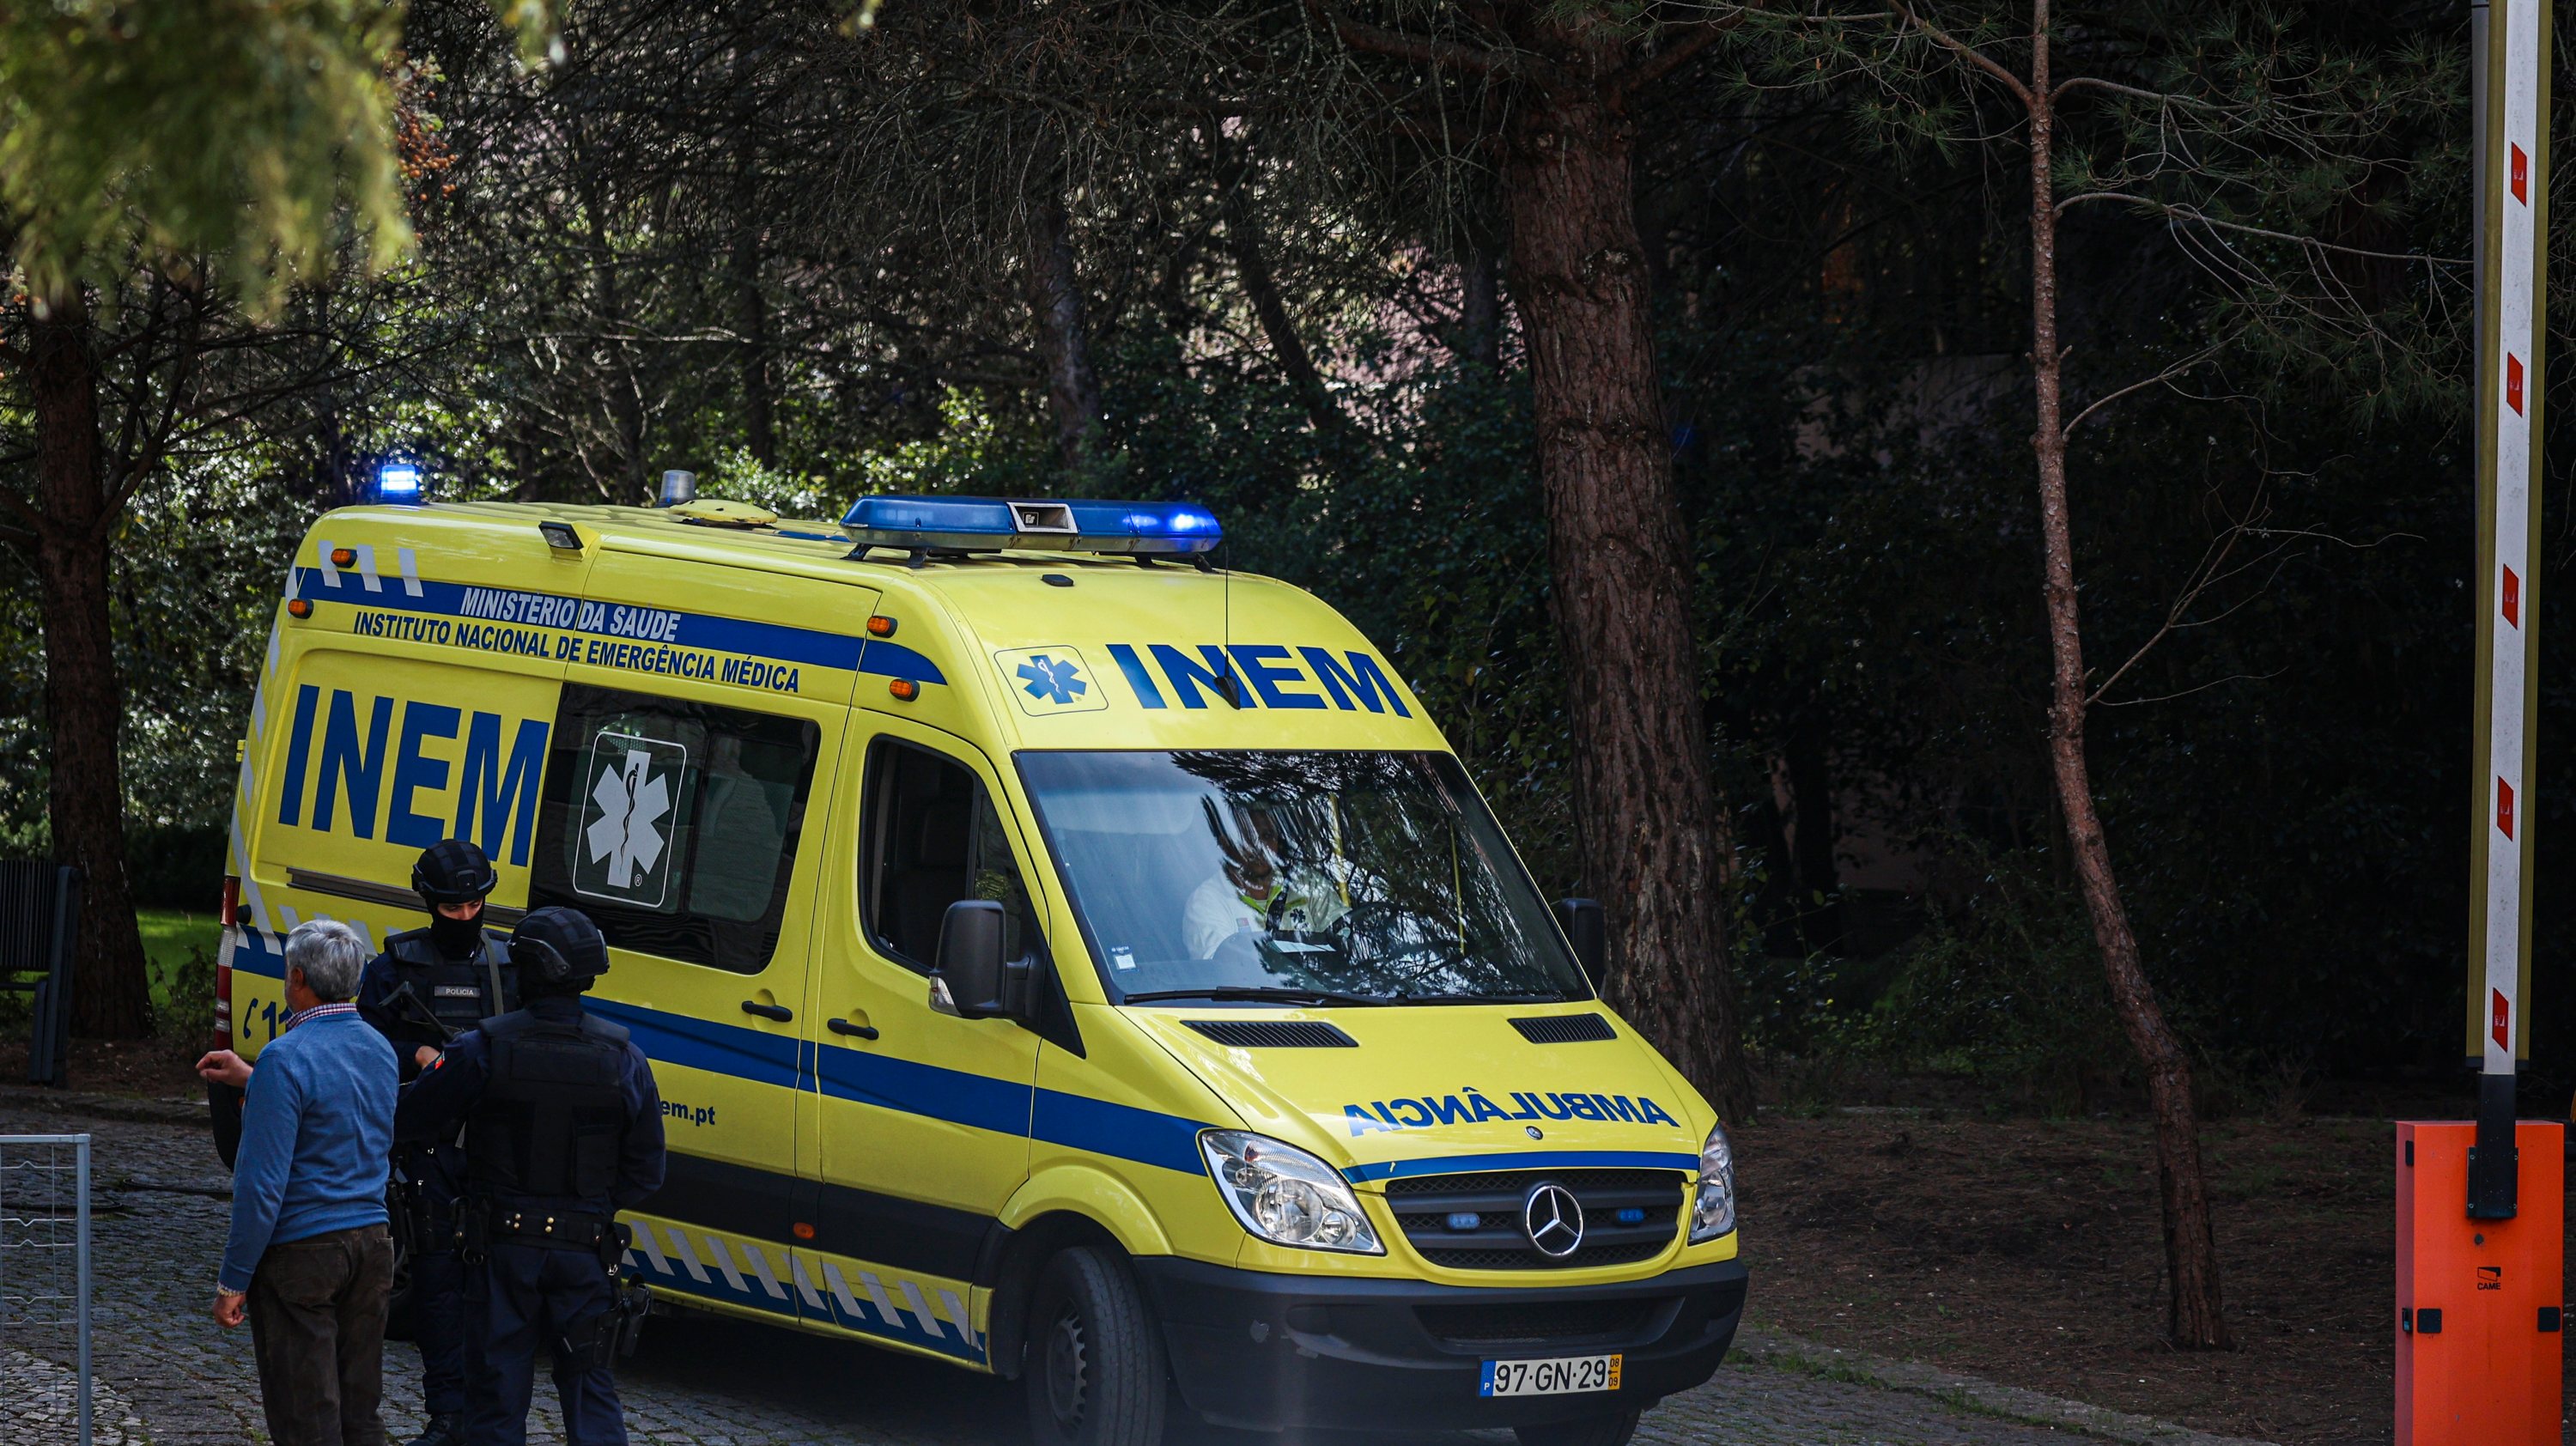 De acordo com o sindicato, as ambulâncias do INEM, em Lisboa, vão estar paradas mais de 80% do tempo do mês de maio.